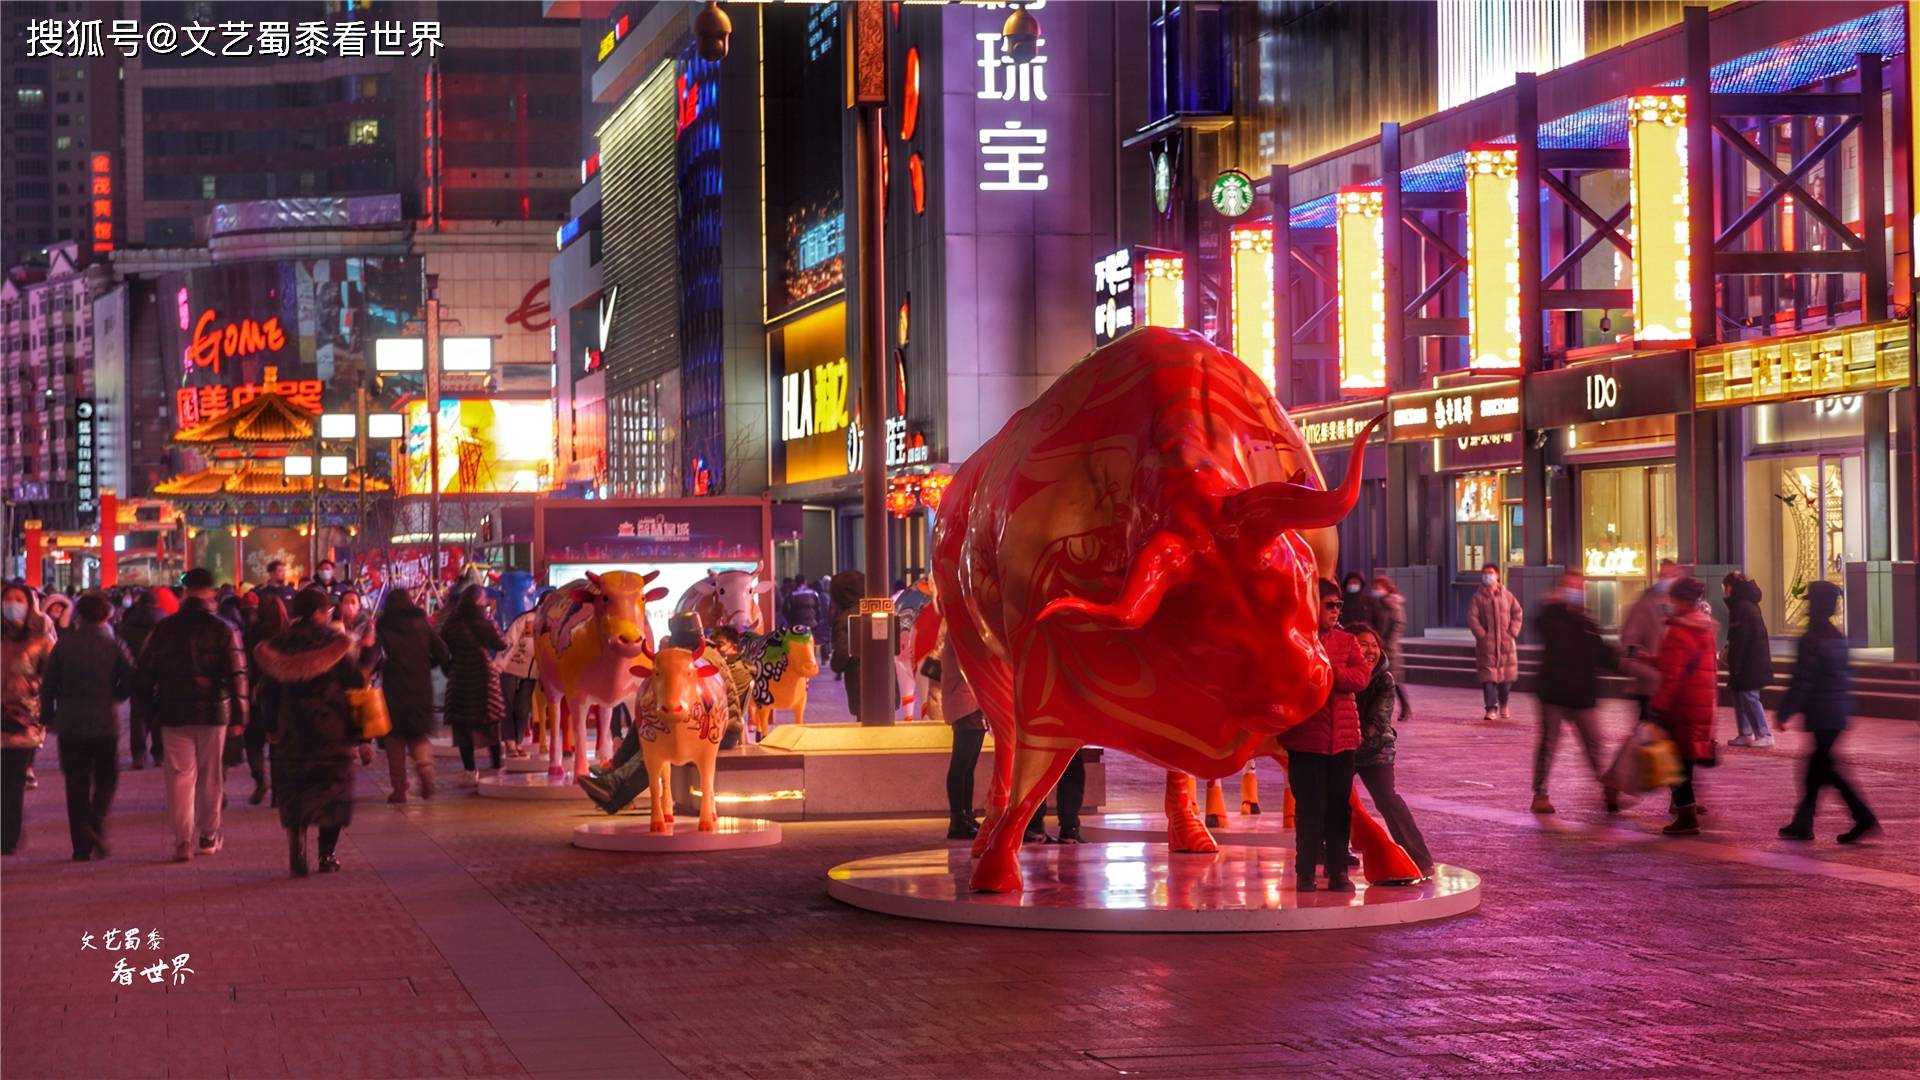 原创沈阳中街的彩绘牛被吐槽有人说晚上见了会害怕事实是那样吗